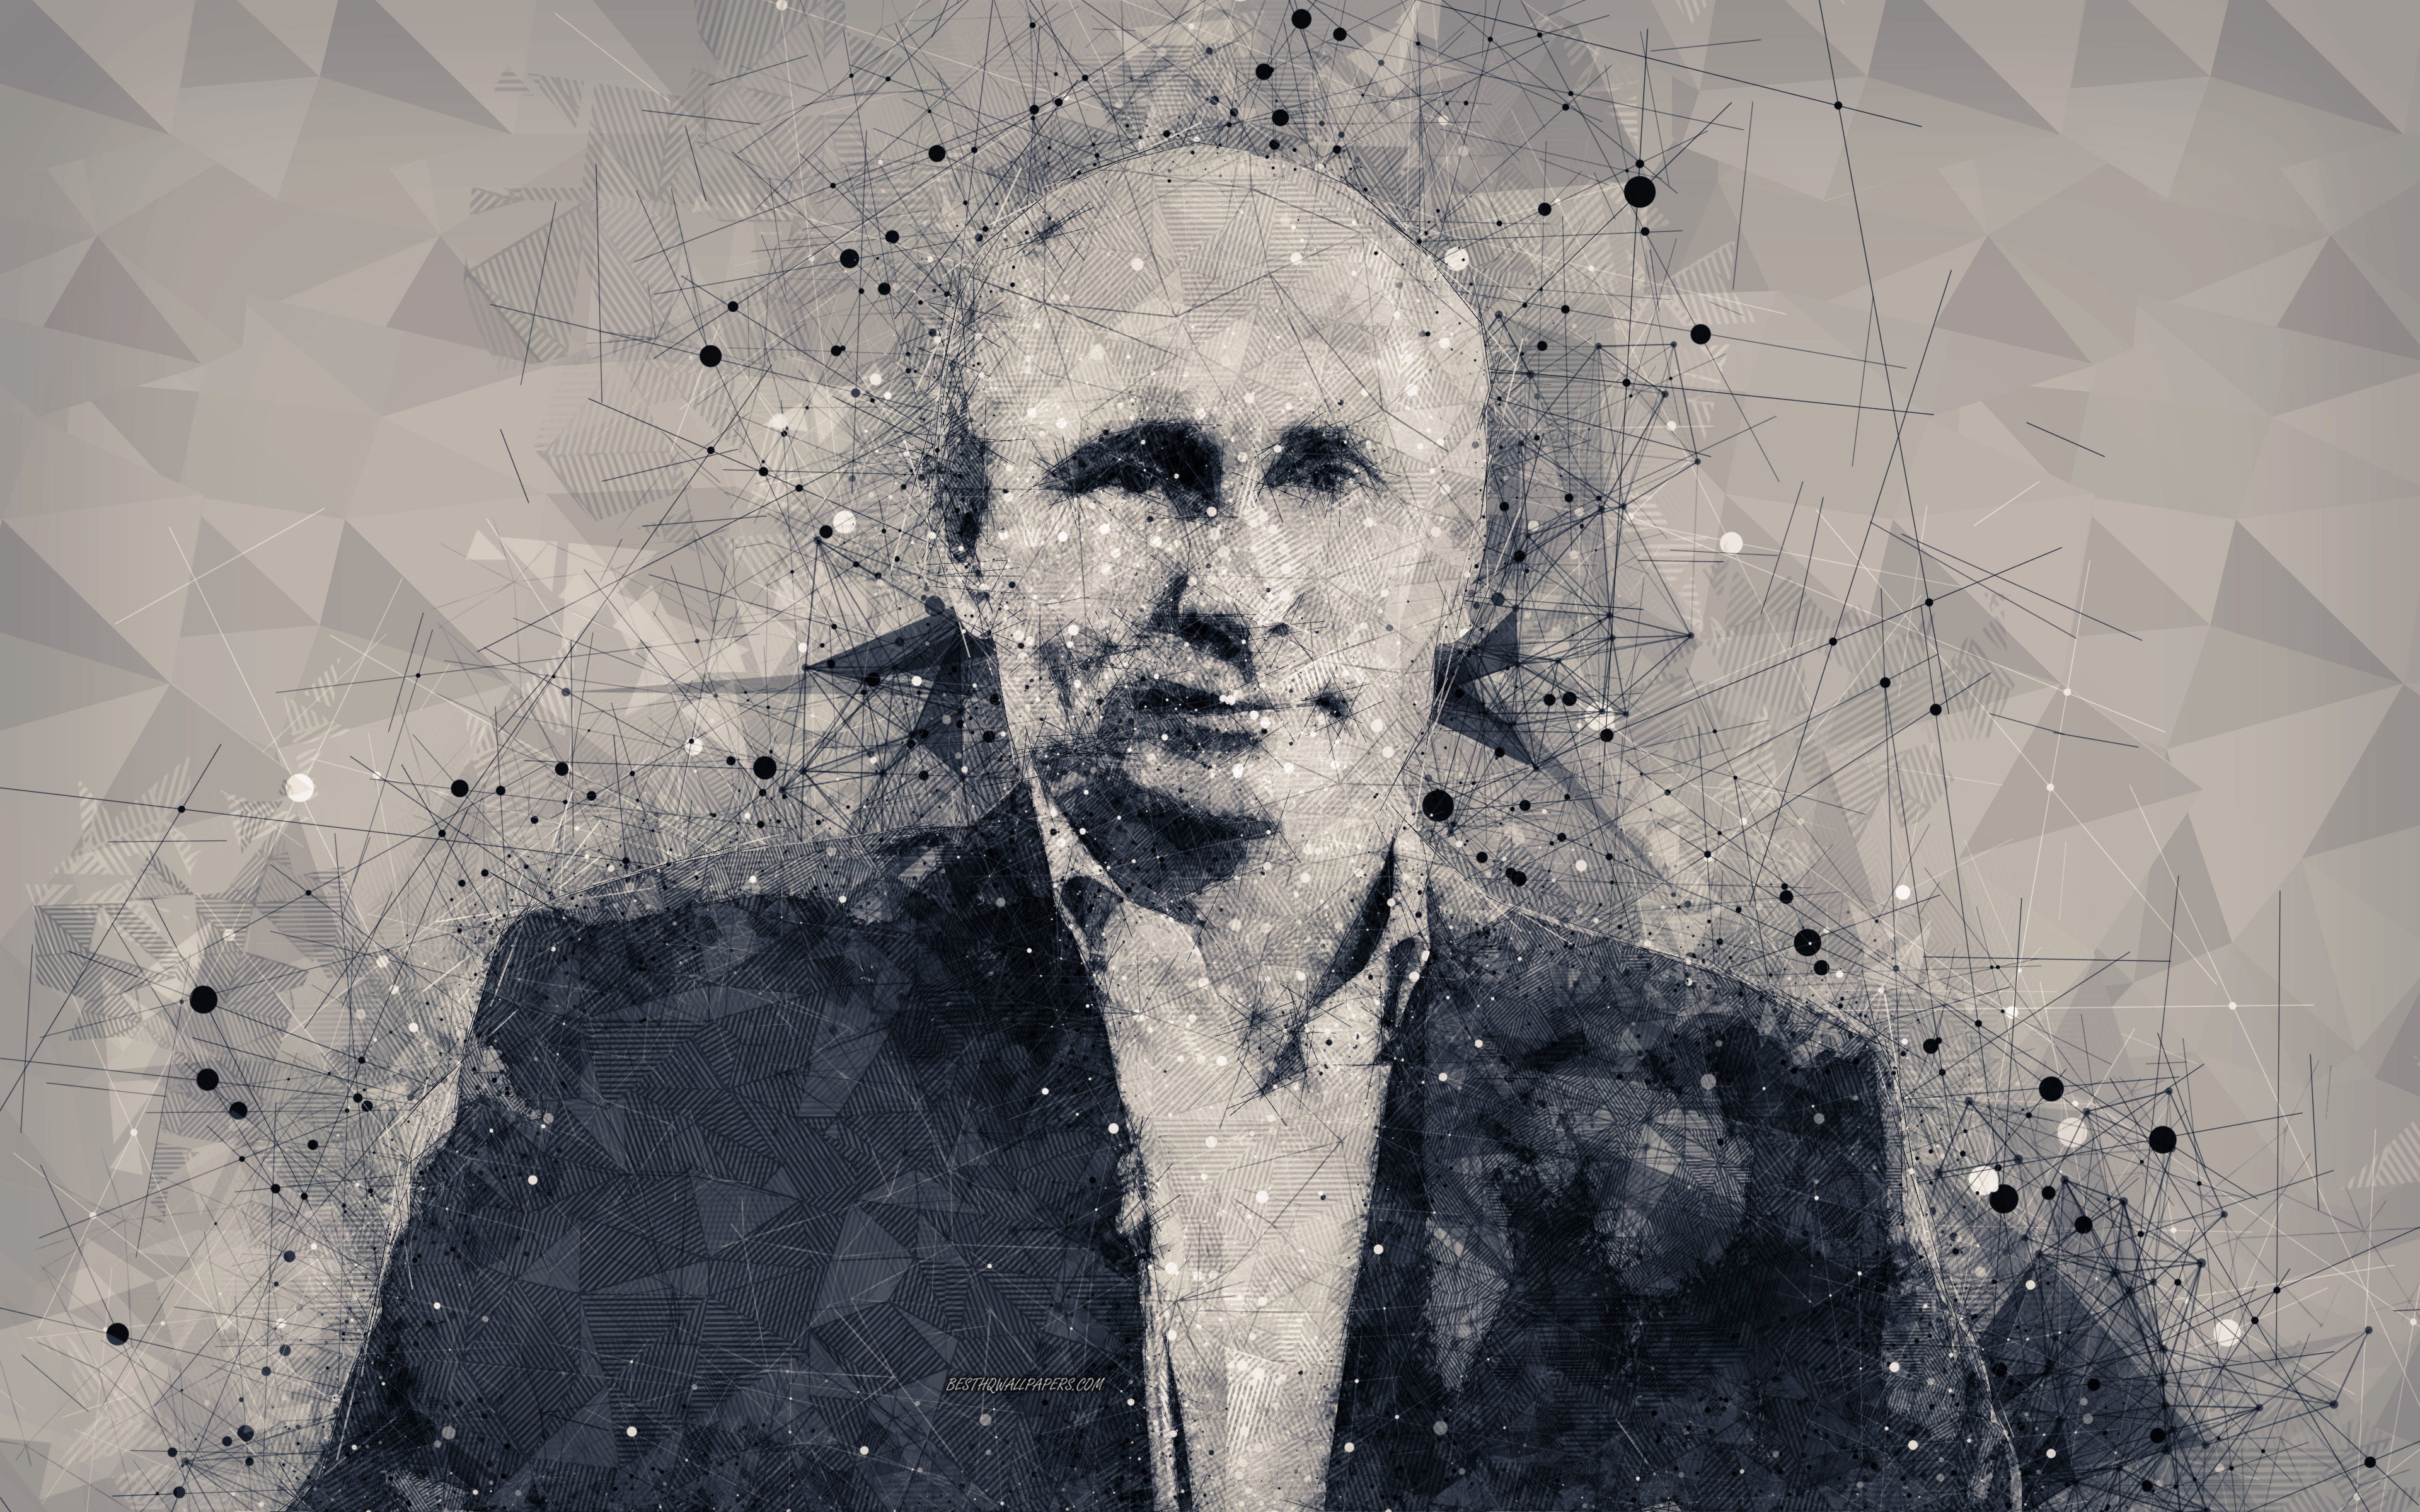 ダウンロード画像 ウラジミール プーチン大統領 4k 長ロシア連邦 創造的肖像 顔 美術 政治家 ロシア 画面の解像度 3840x2400 壁紙デスクトップ上